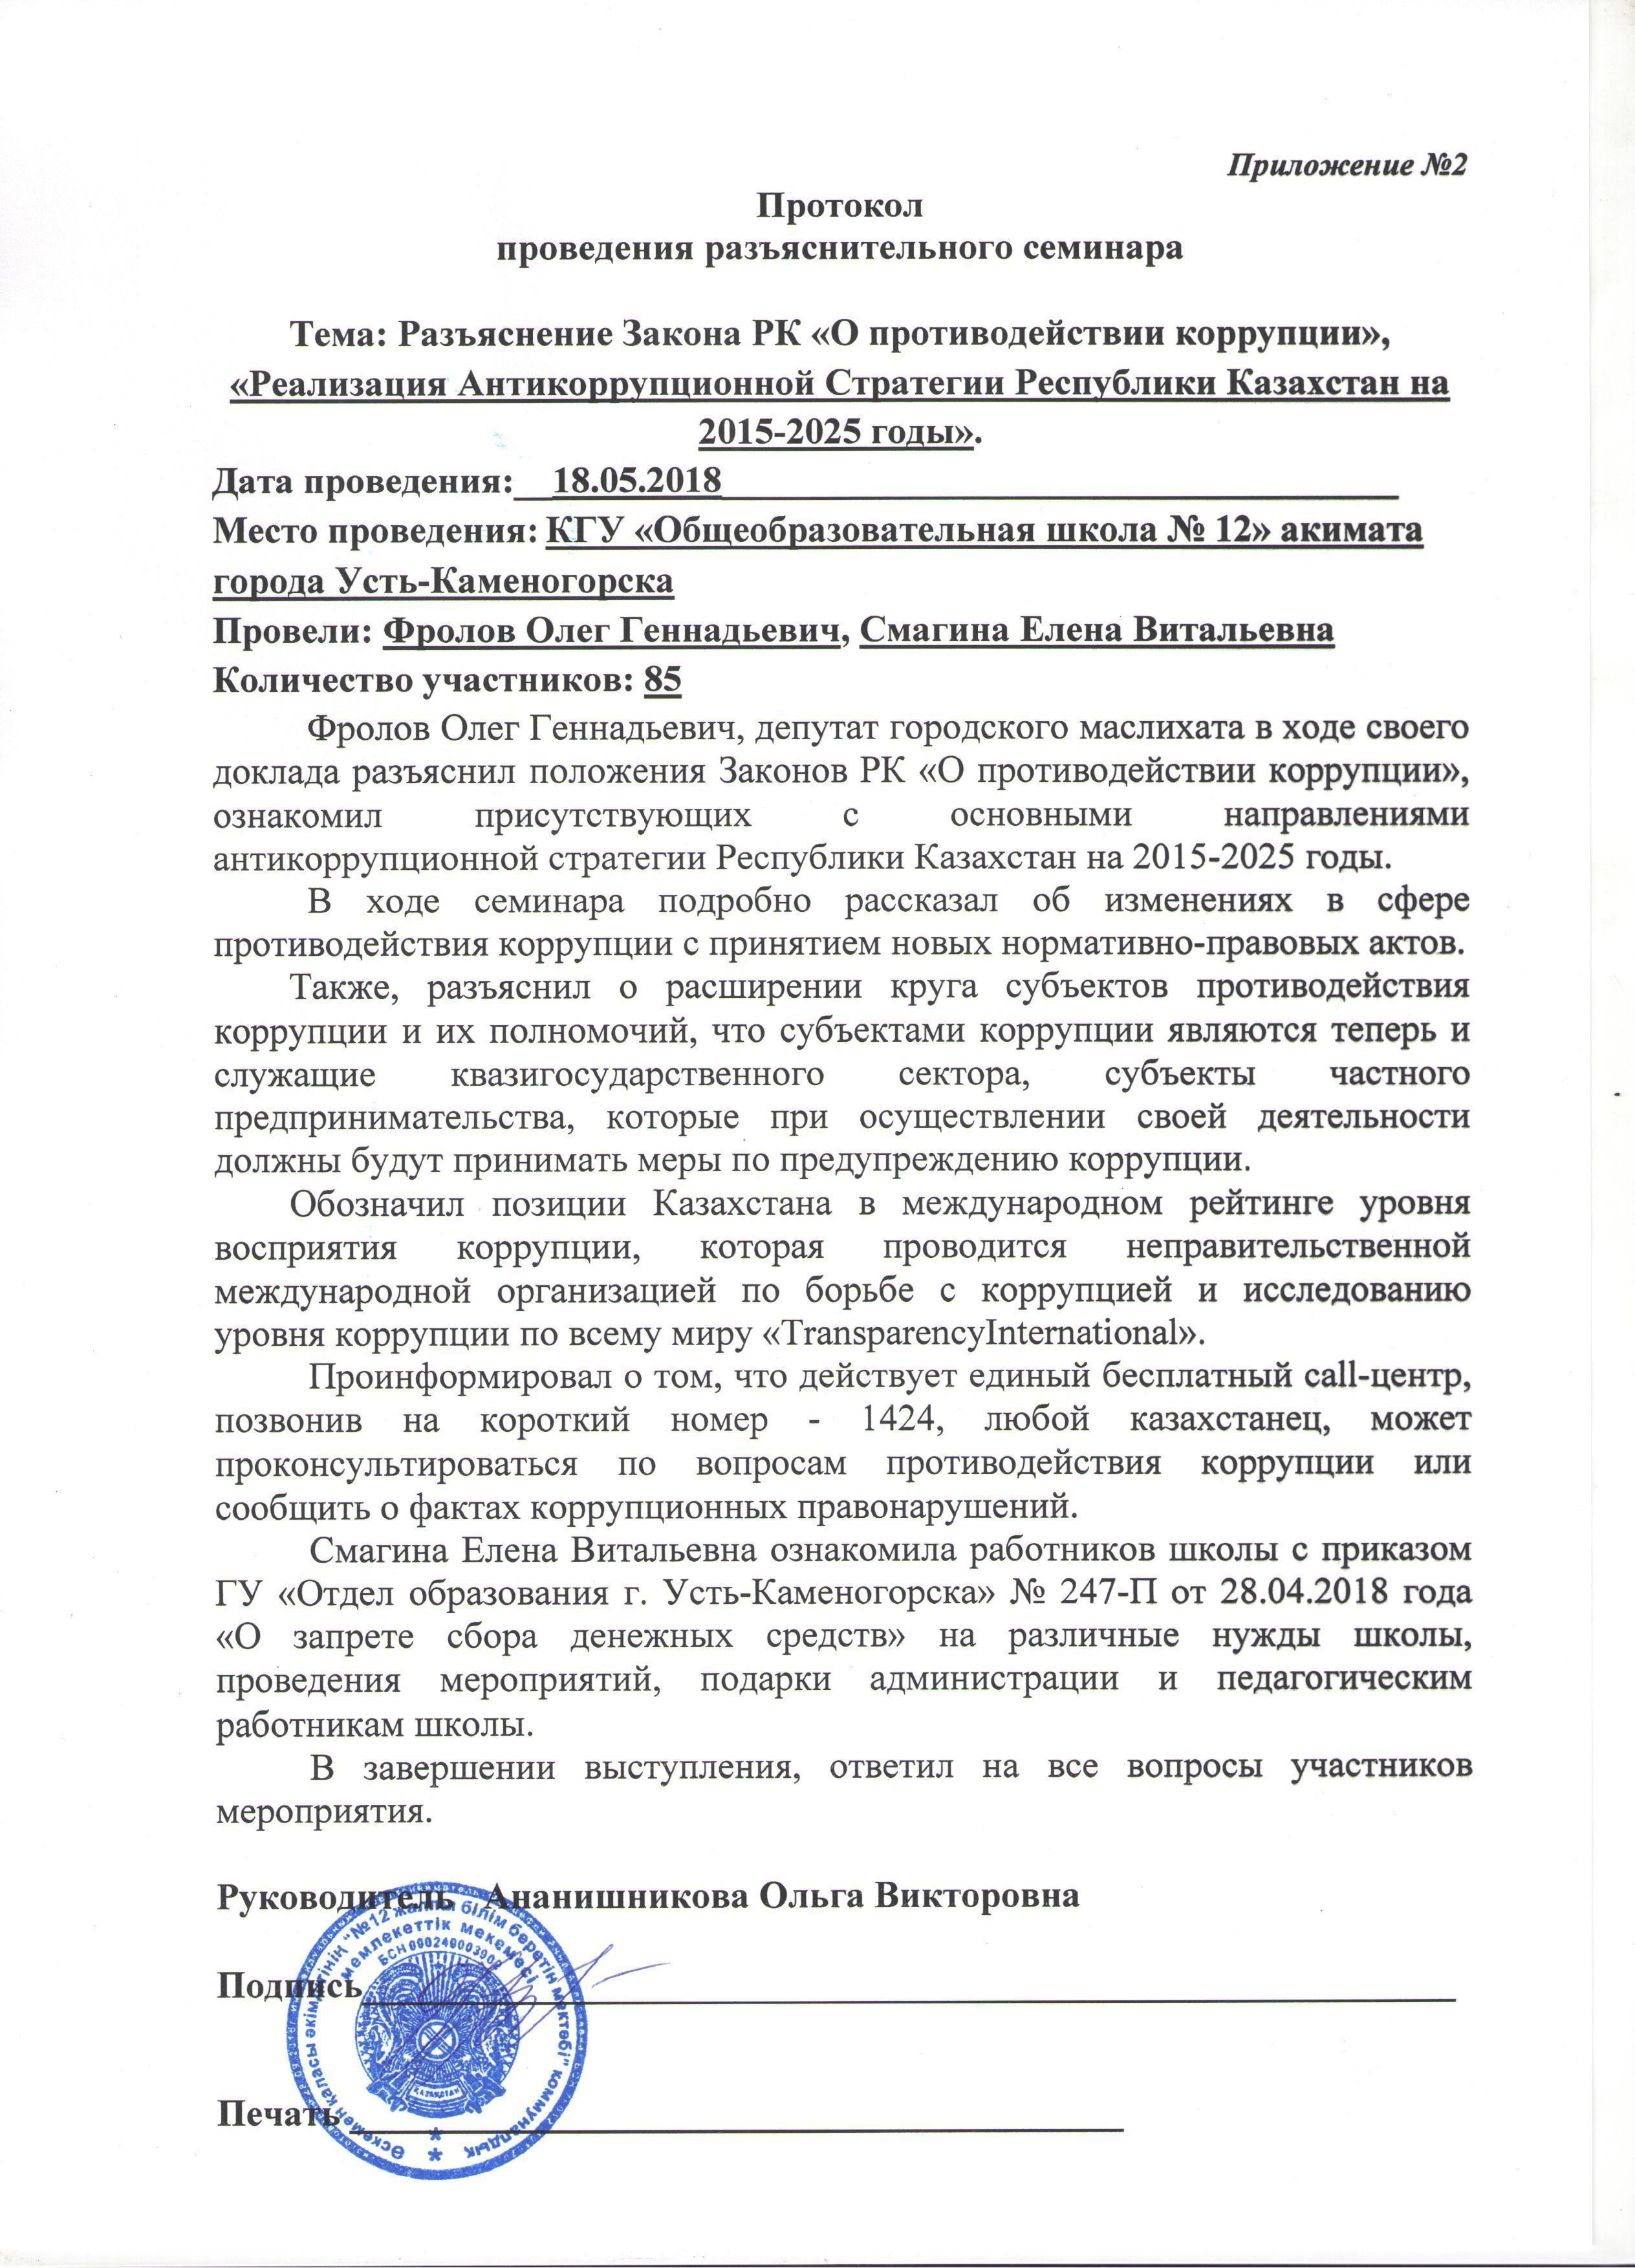 Разъяснение Закона РК «О противодействии коррупции», «Реализация Антикоррупционной Стратегии Республики Казахстан на 2015-2025 годы».